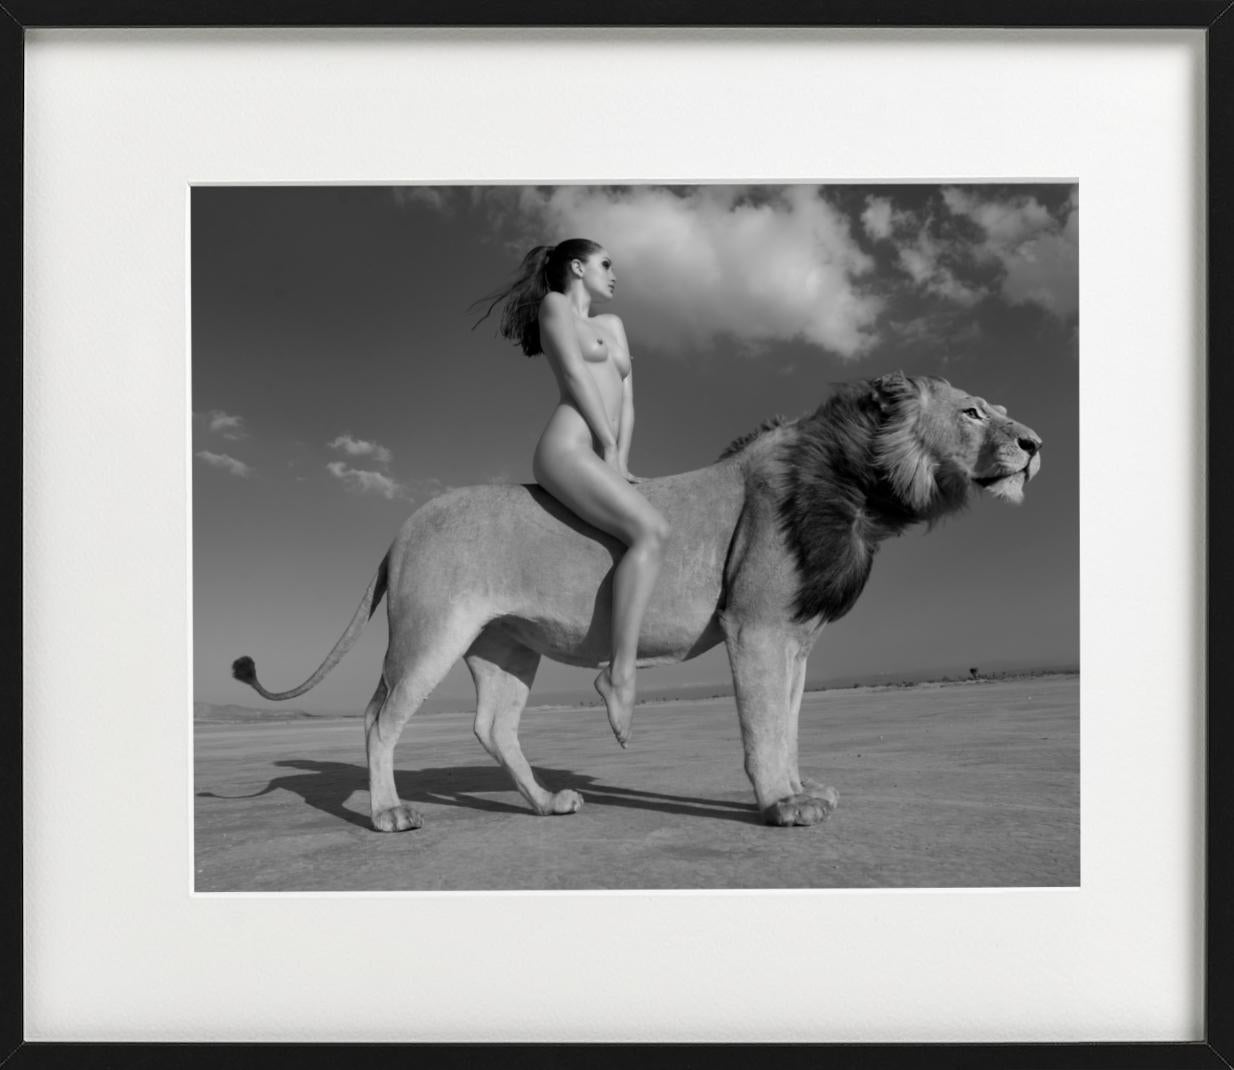 woman riding lion